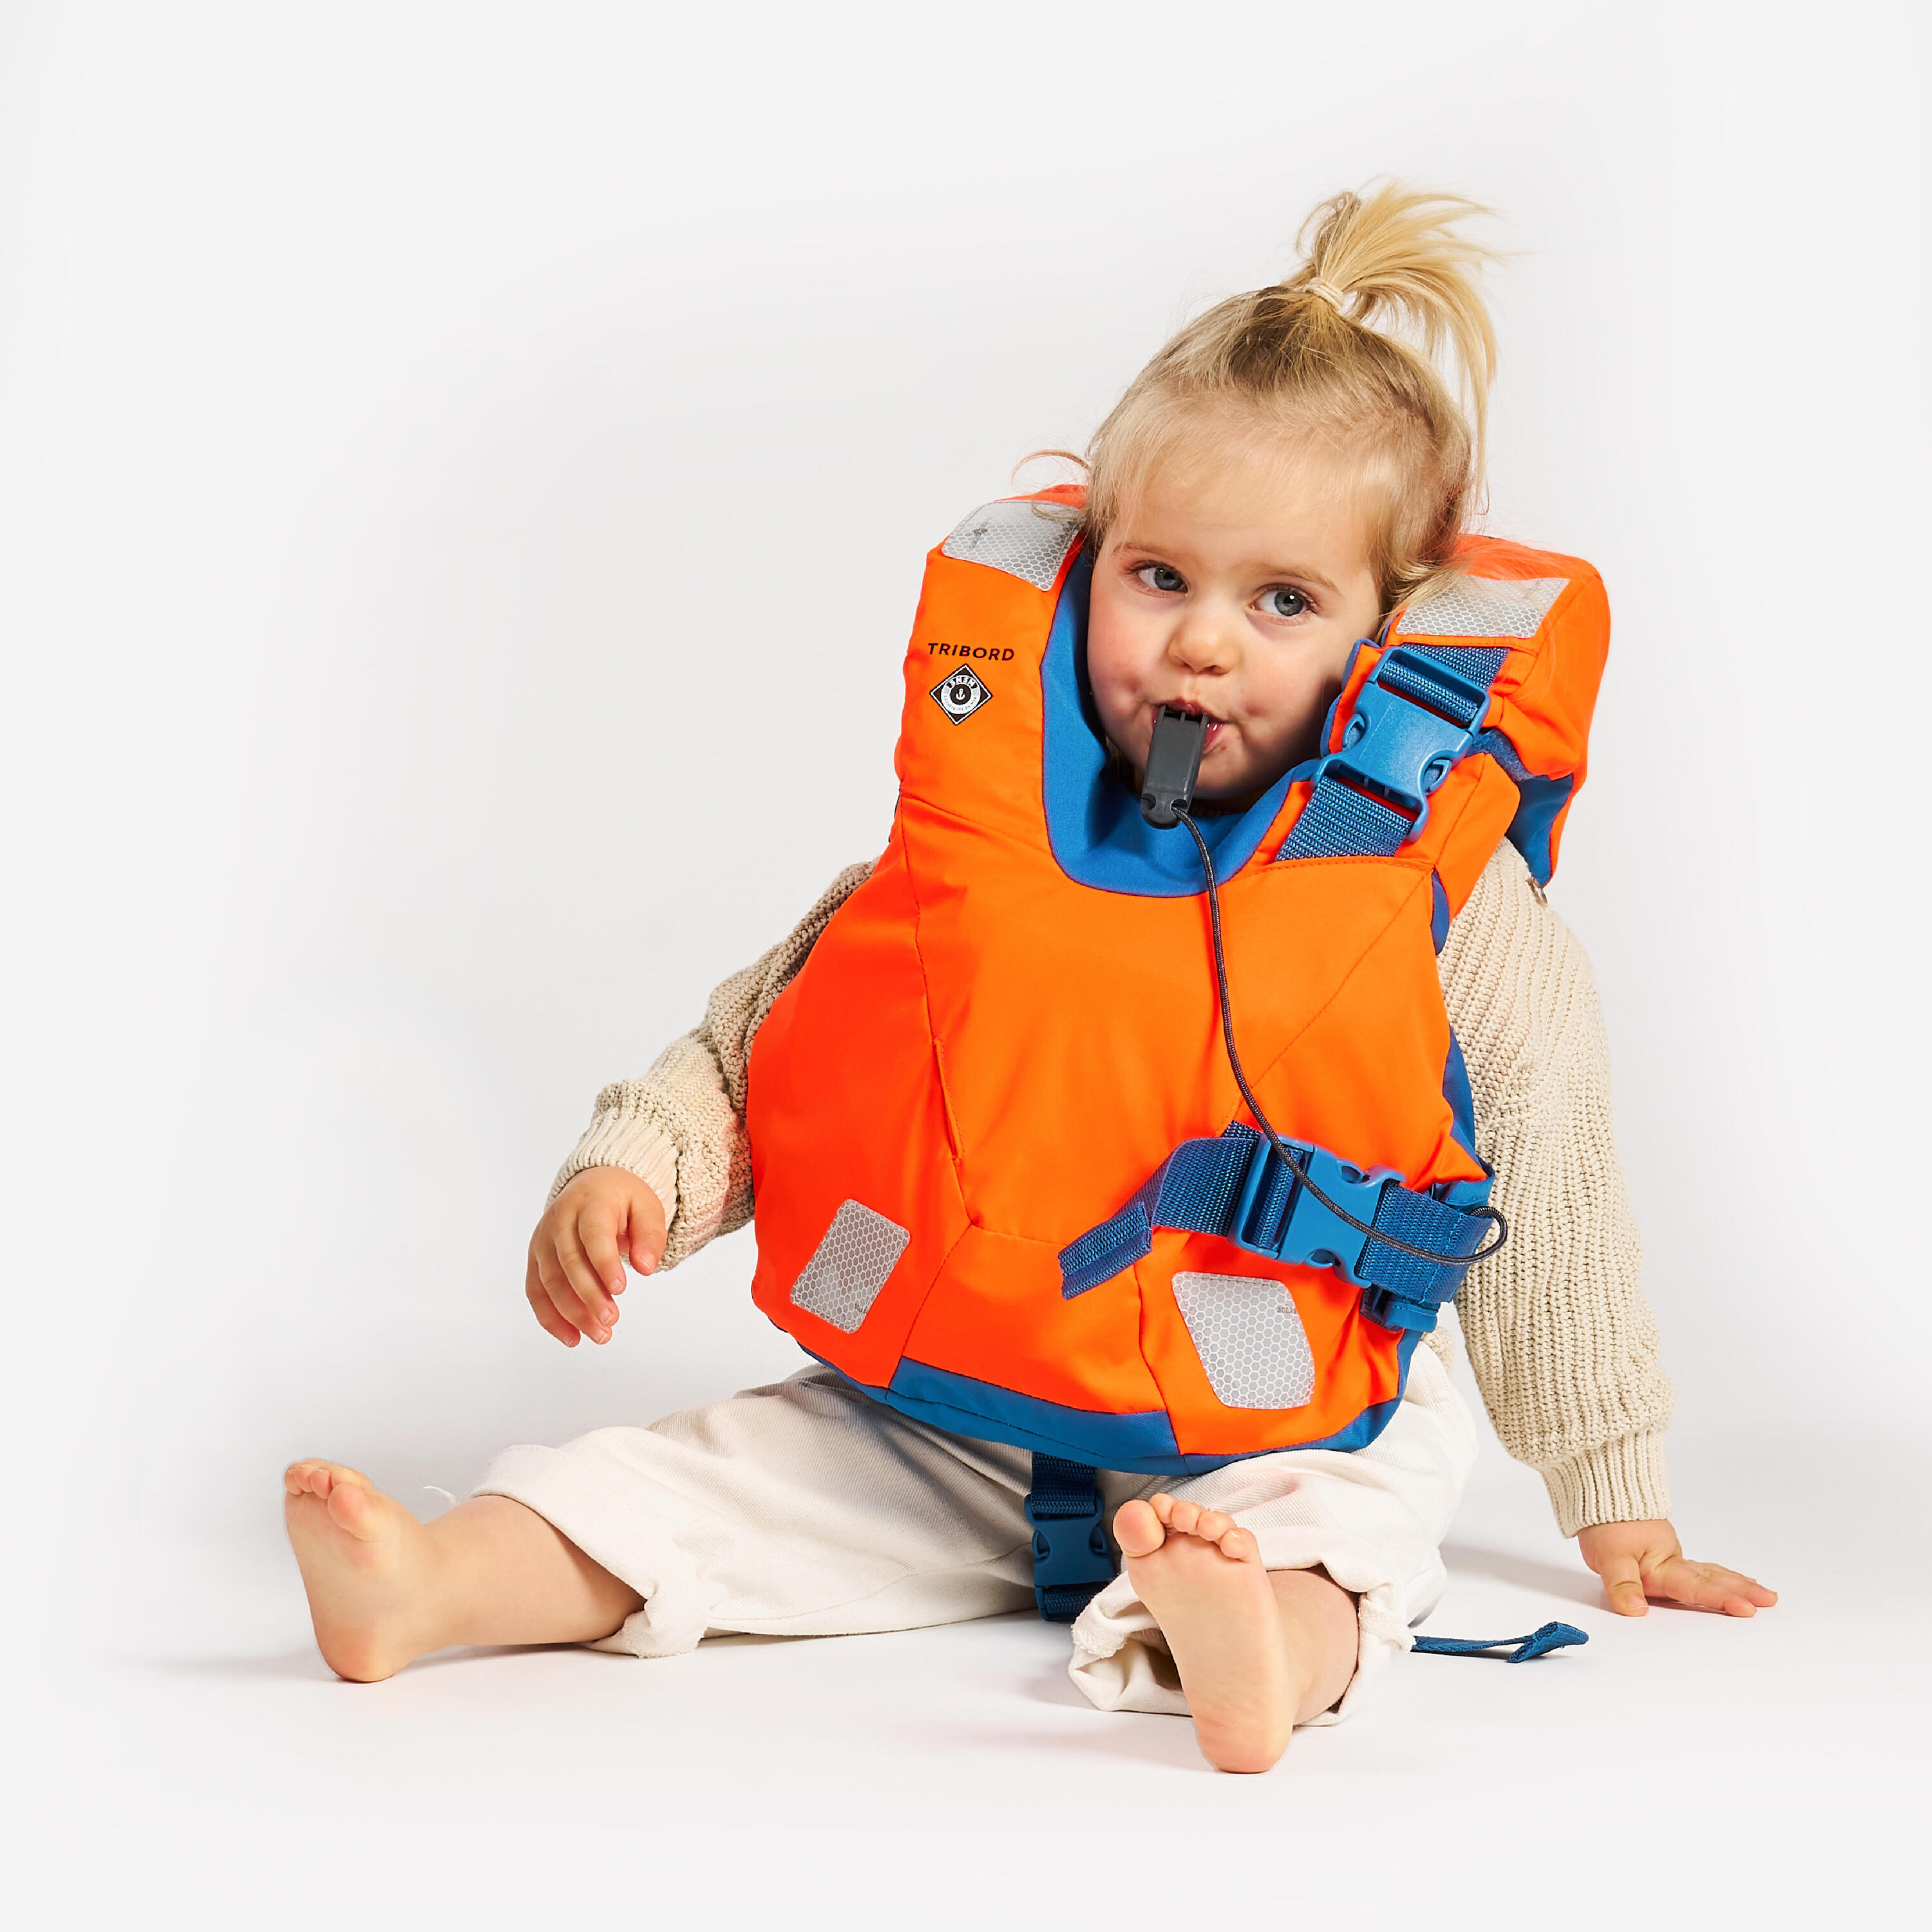 LJ100N easy baby life jacket for babies and infants 10-15 kg orange blue 10/15